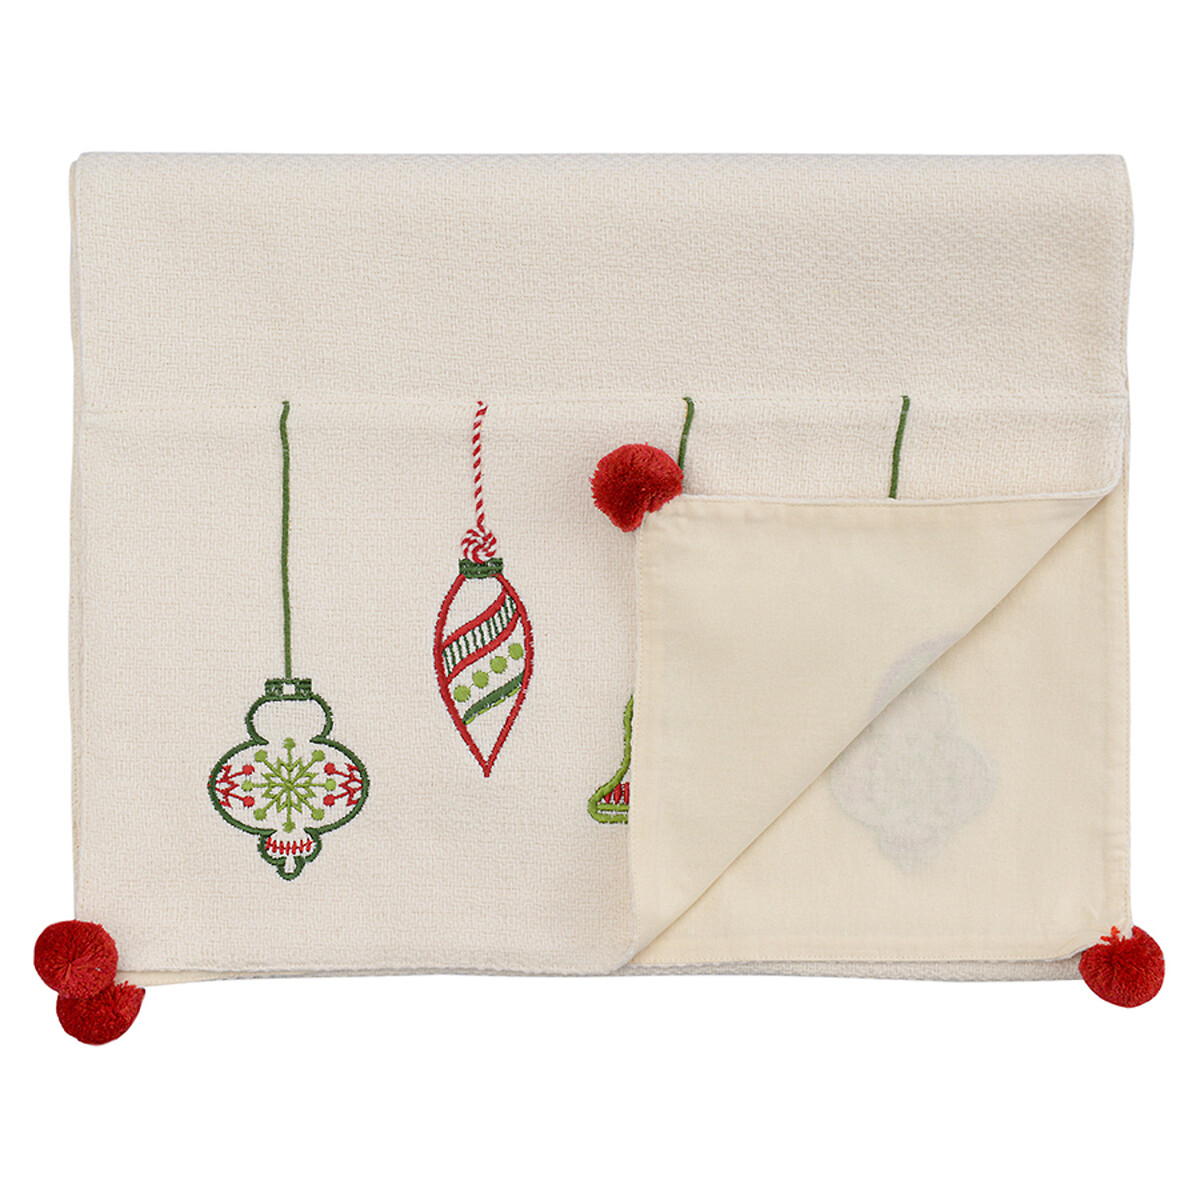 Дорожка с вышивкой Christmas decorations из коллекции New Year Essential 45х150 см  единый размер белый LaRedoute - фото 1